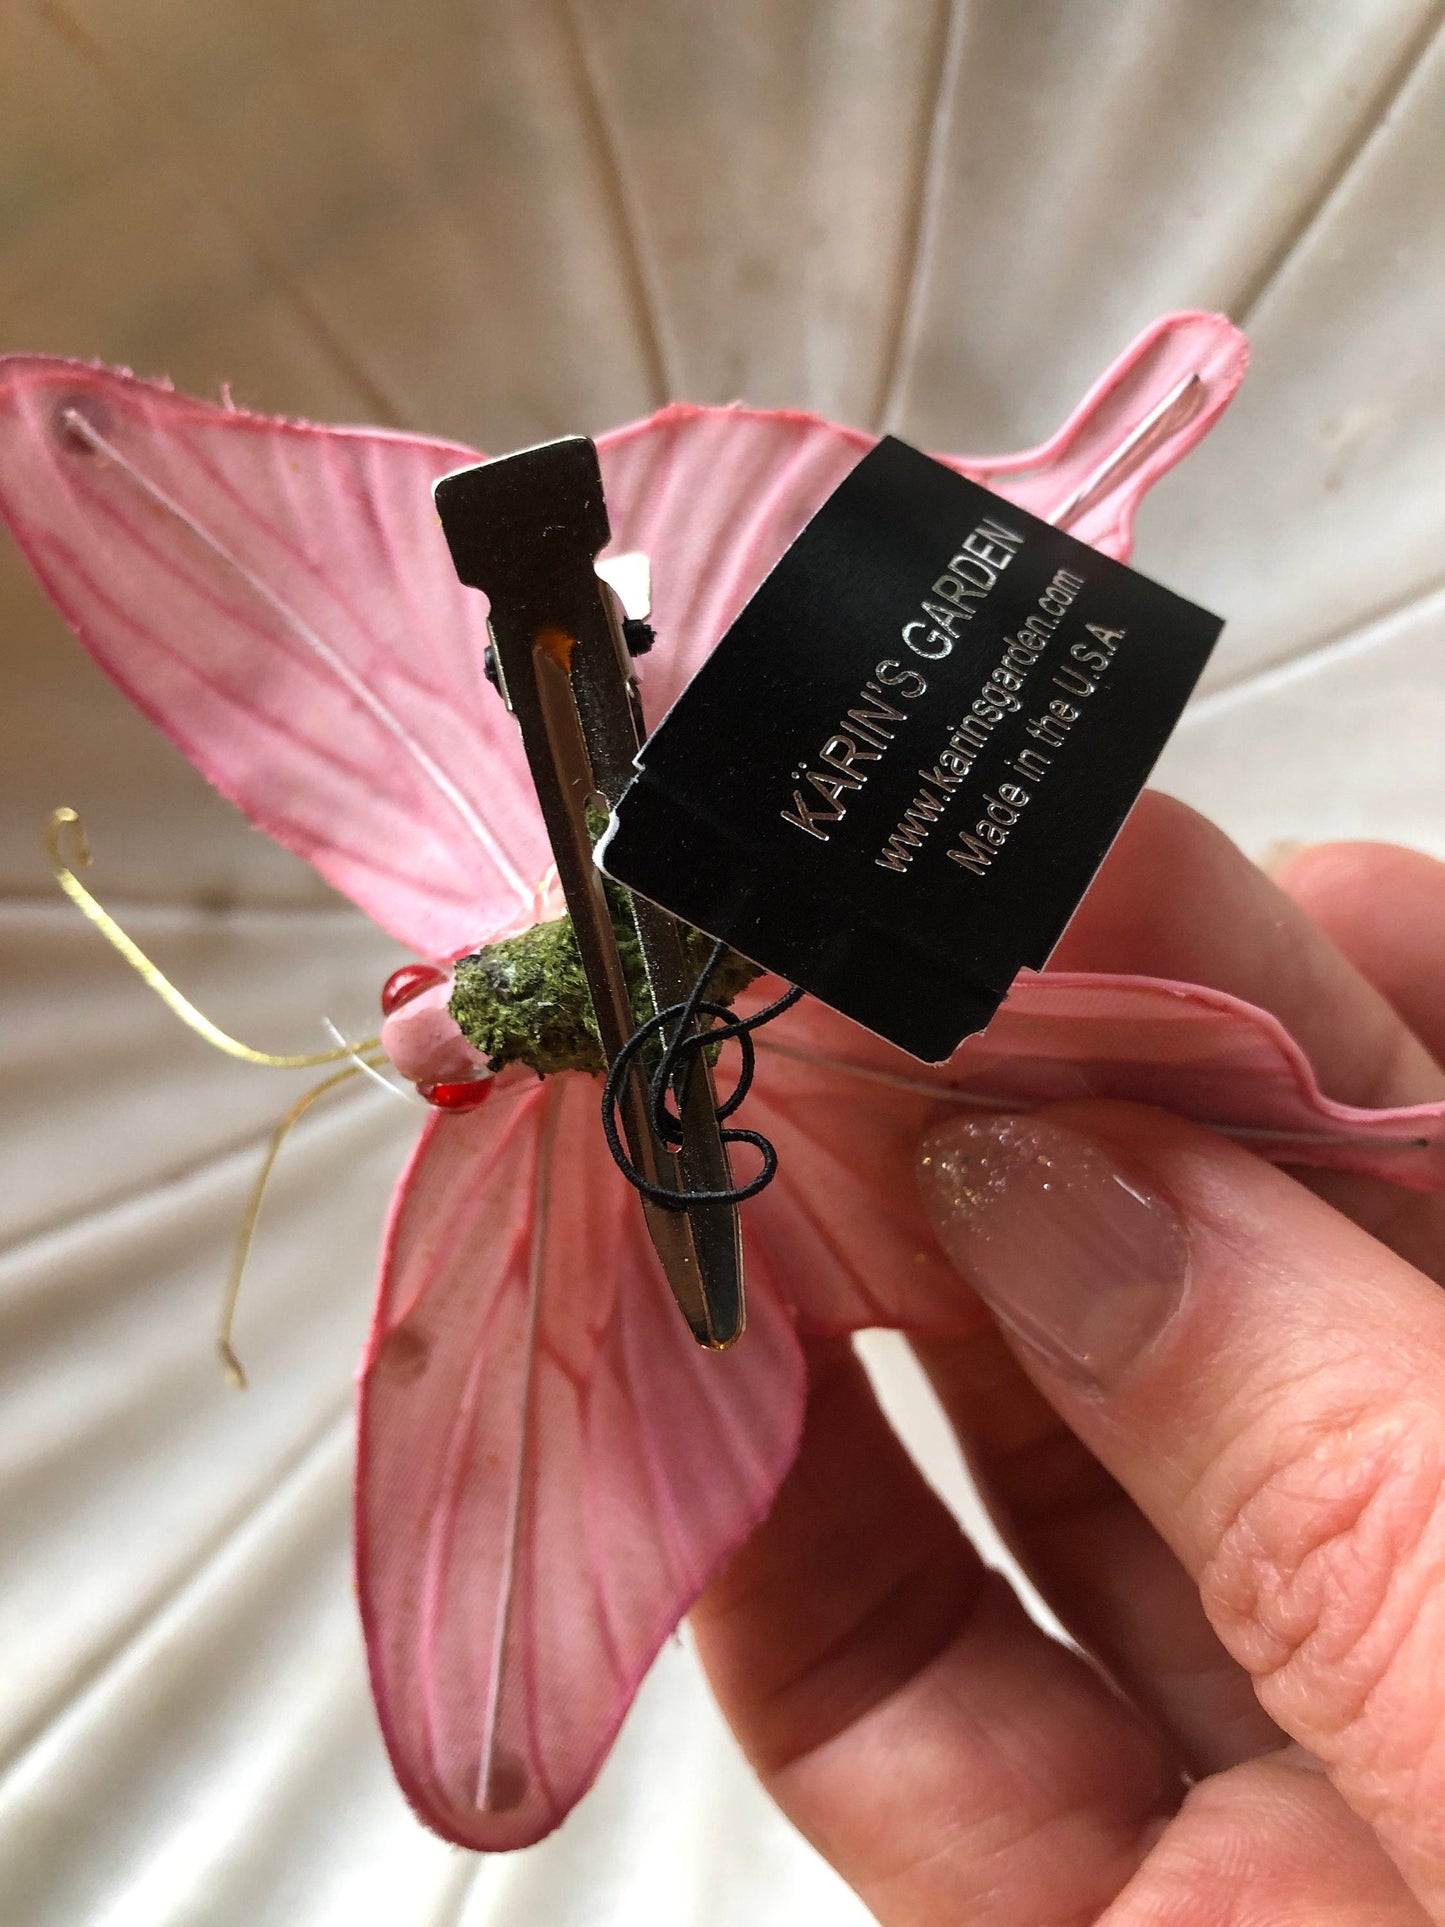 Karin's Garden Pince papillon noire de 7,6 cm. Pétales pliables. À porter dans vos cheveux ou à clipser sur un revers, un débardeur ou une robe. Accessoire pour cheveux